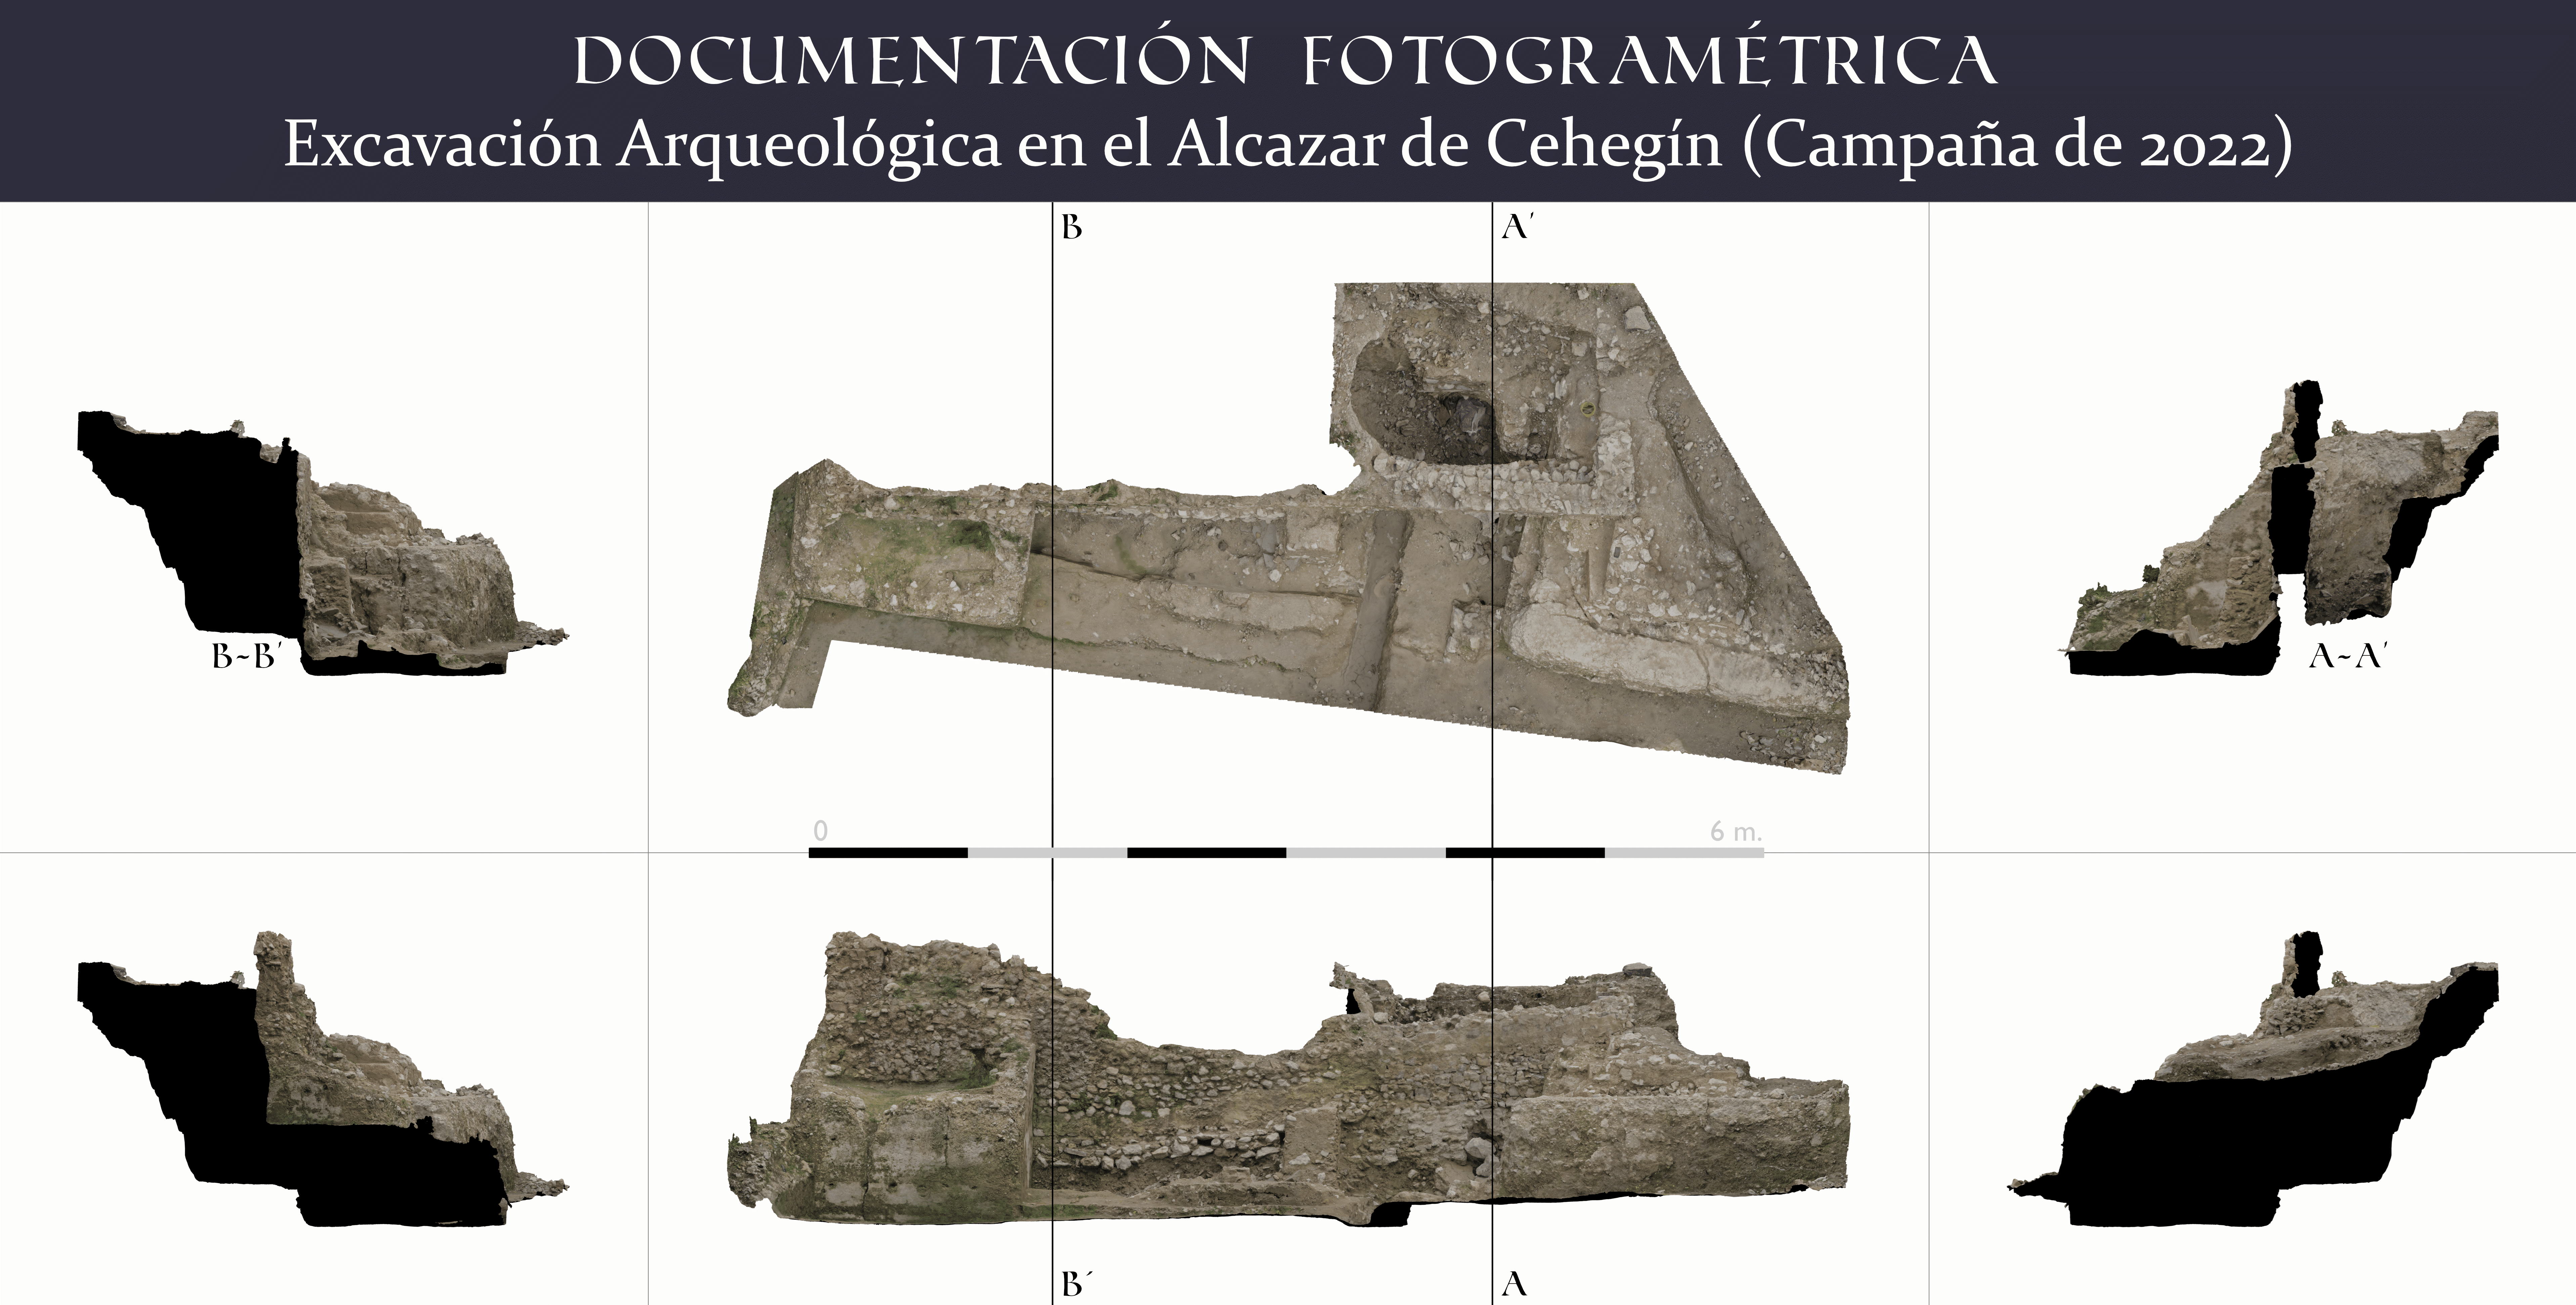 Visualización Arqueológica y Patrimonial: Imagen de ortofotos técnicas del yacimiento arqueológico del Alcázar de Cehegín, mostrando vistas en alzado, planta, perfiles y secciones.